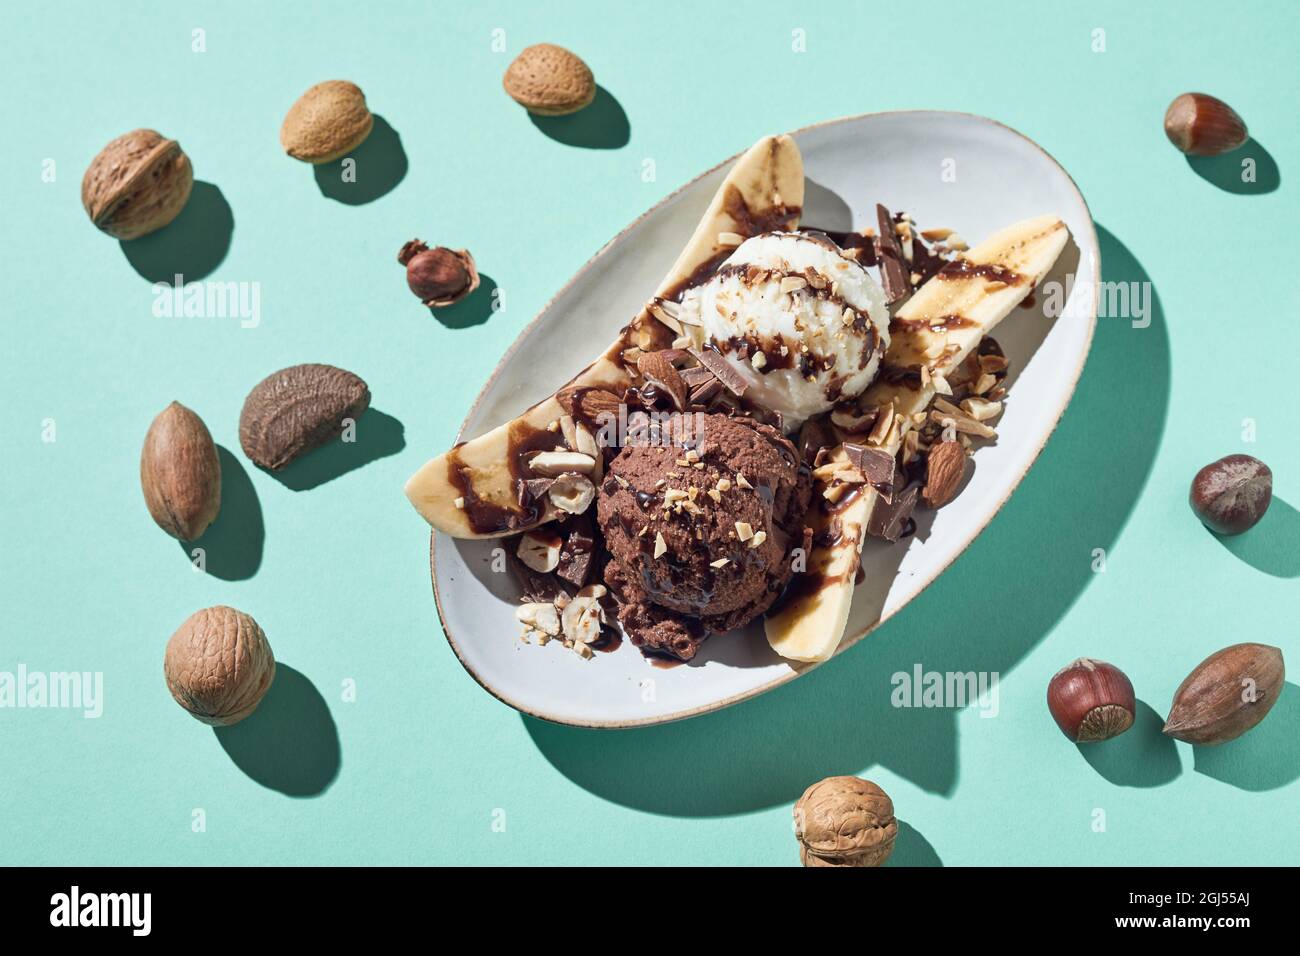 Vue de dessus de l'appétissant dessert de banane avec des boules de glace vanille et chocolat garnies de sirop et de noisettes servies sur fond bleu clair Banque D'Images